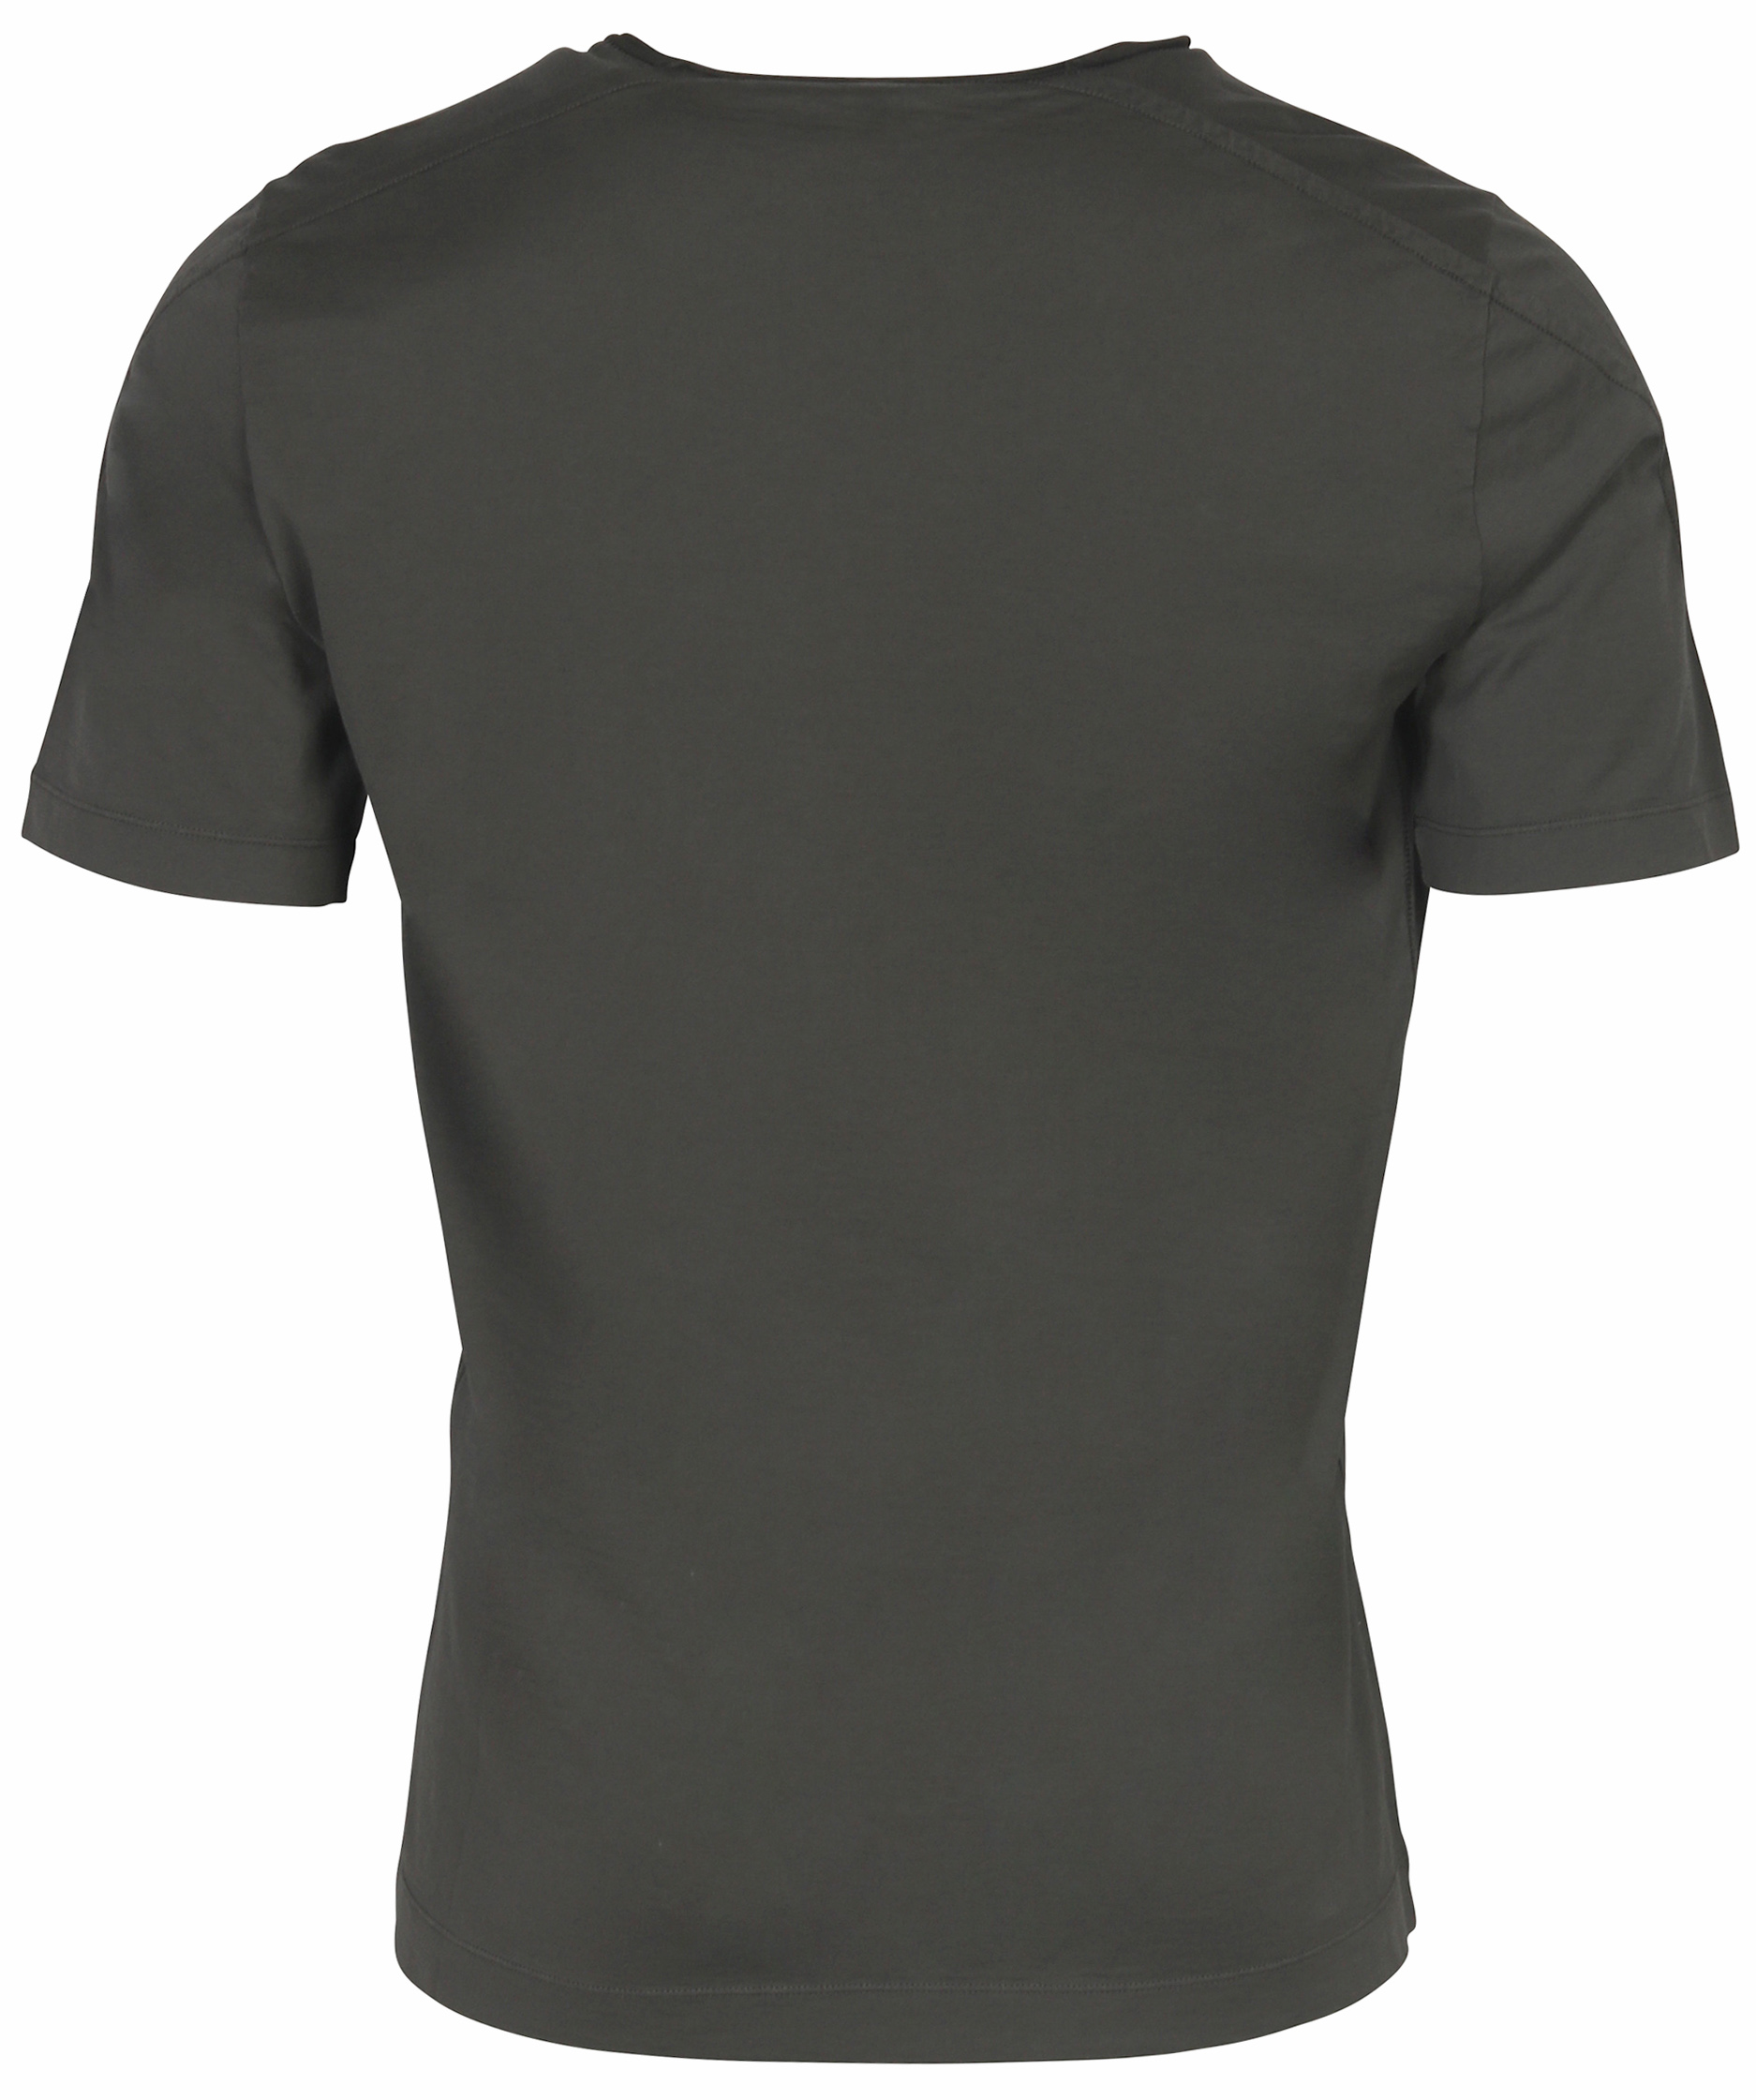 Transit Uomo T-Shirt Charcoal XL